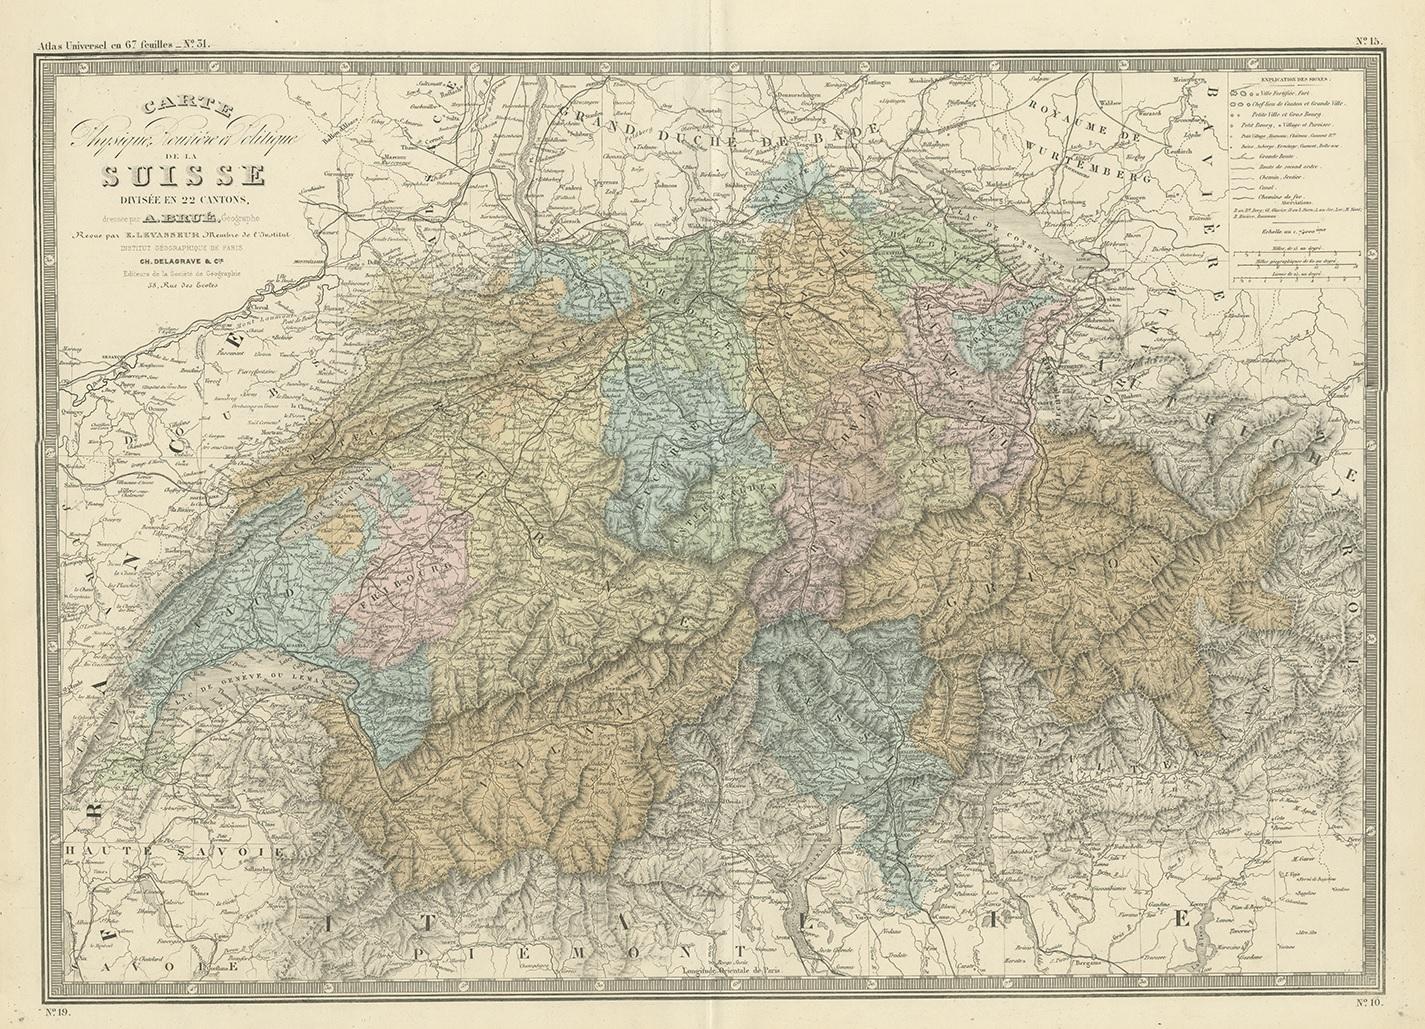 Antique map titled 'Carte de la Suisse (..)'. Large map of Switzerland. This map originates from 'Atlas de Géographie Moderne Physique et Politique' by A. Levasseur. Published 1875.